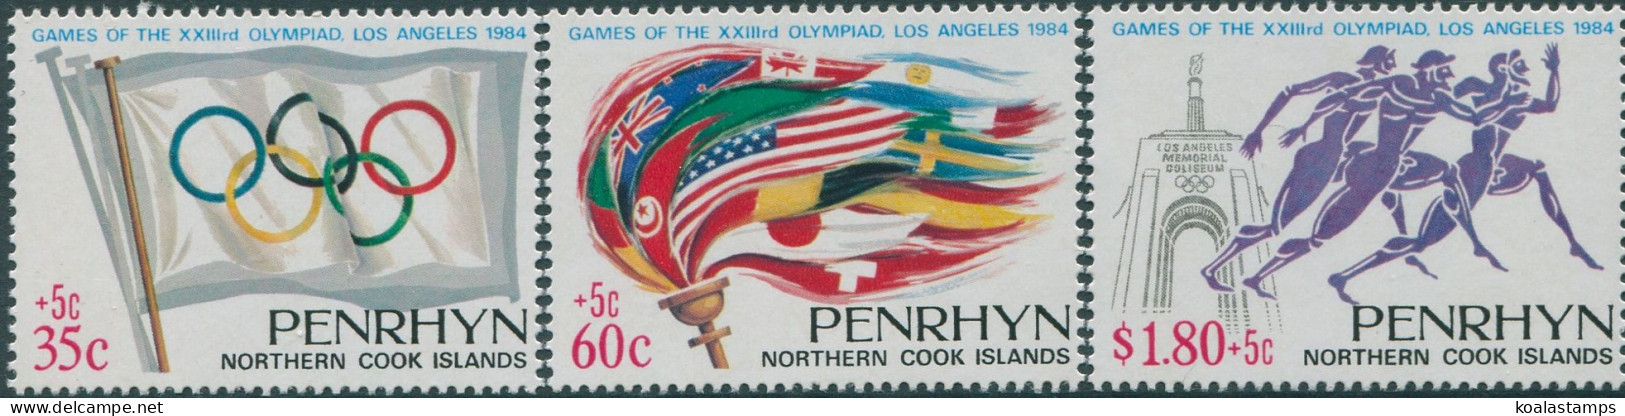 Cook Islands Penrhyn 1984 SG356-358 Olympic Games Set MNH - Penrhyn